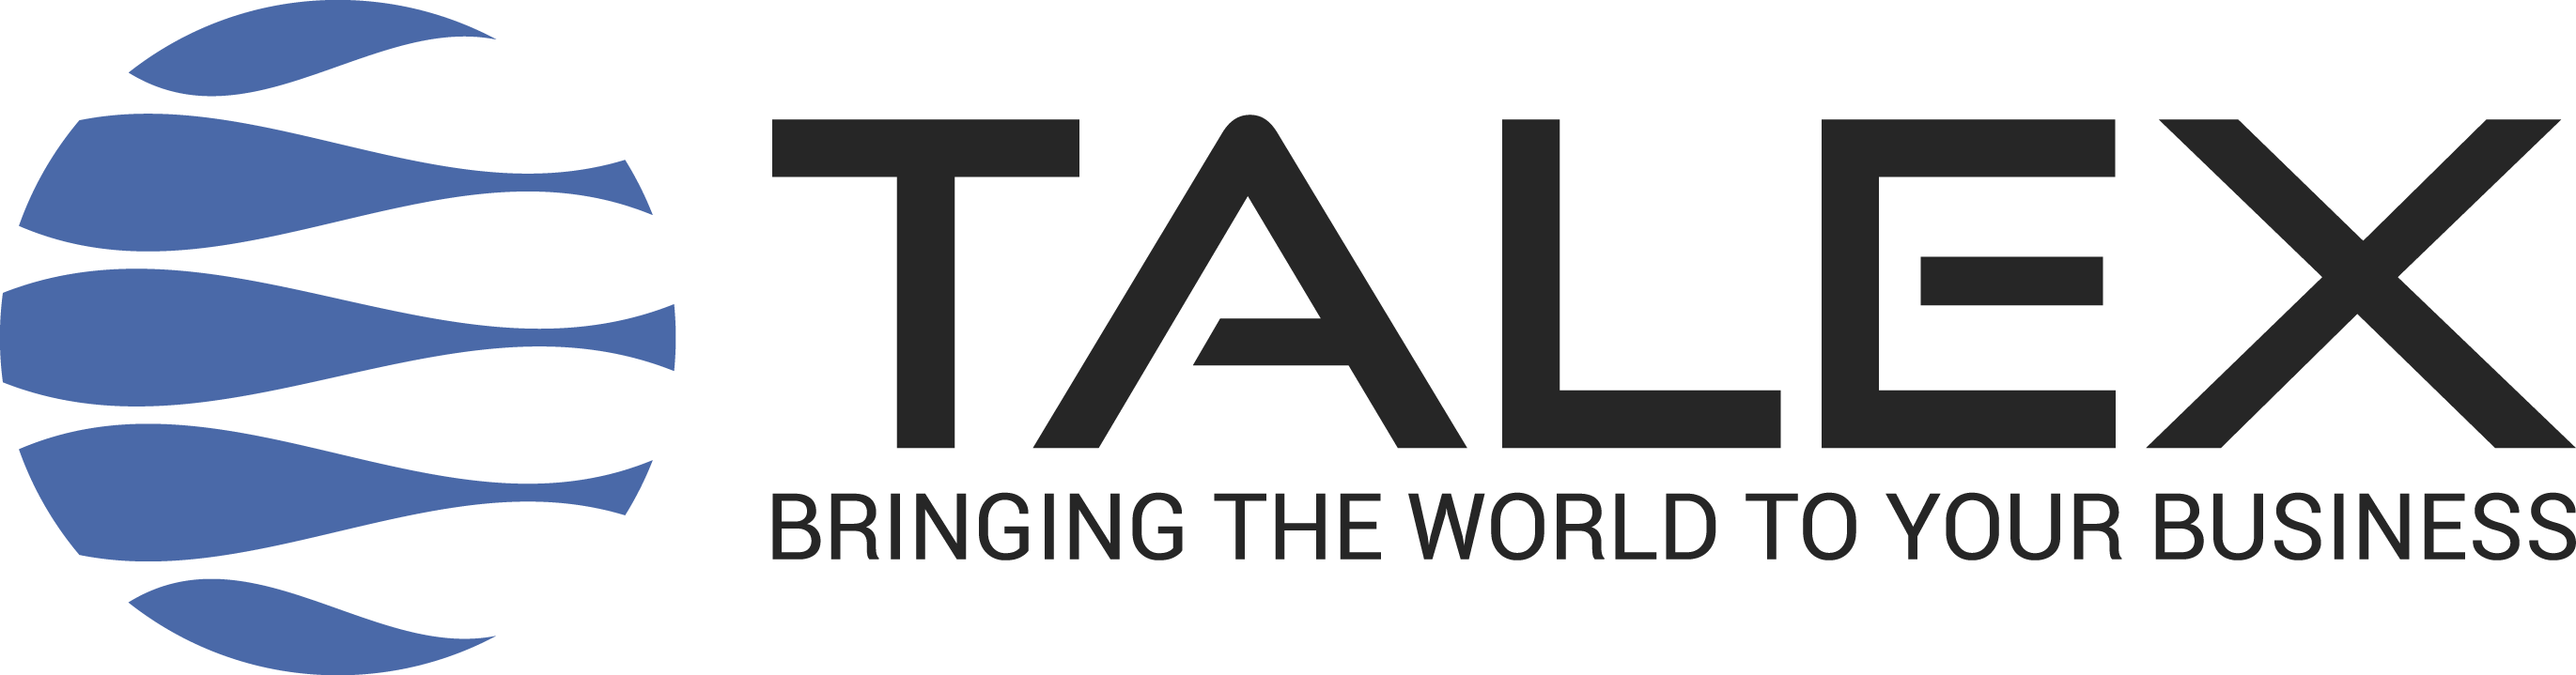 Talex - Din e-handelspartner